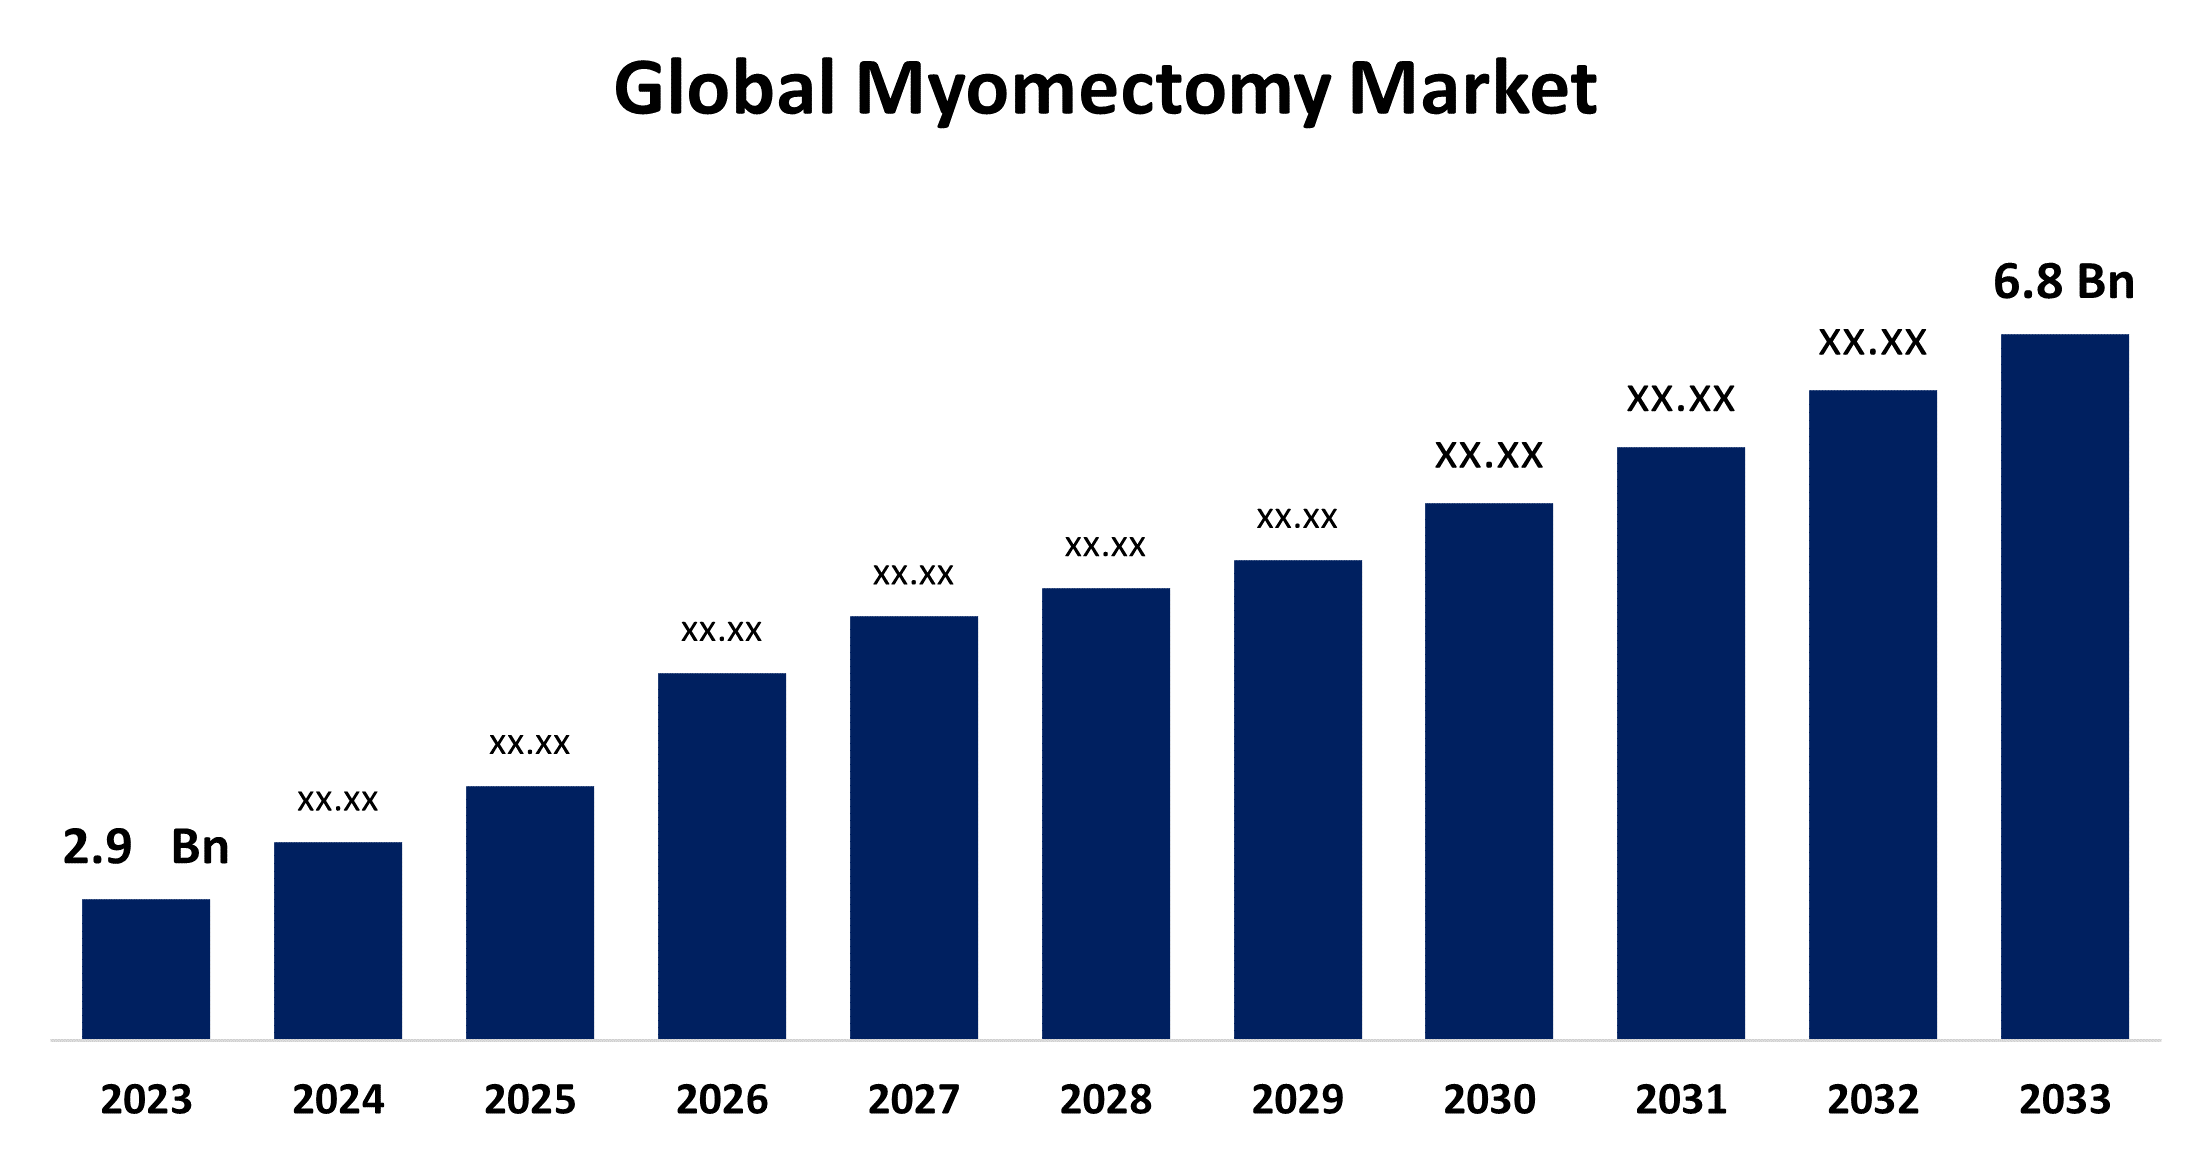 Global Myomectomy Market 